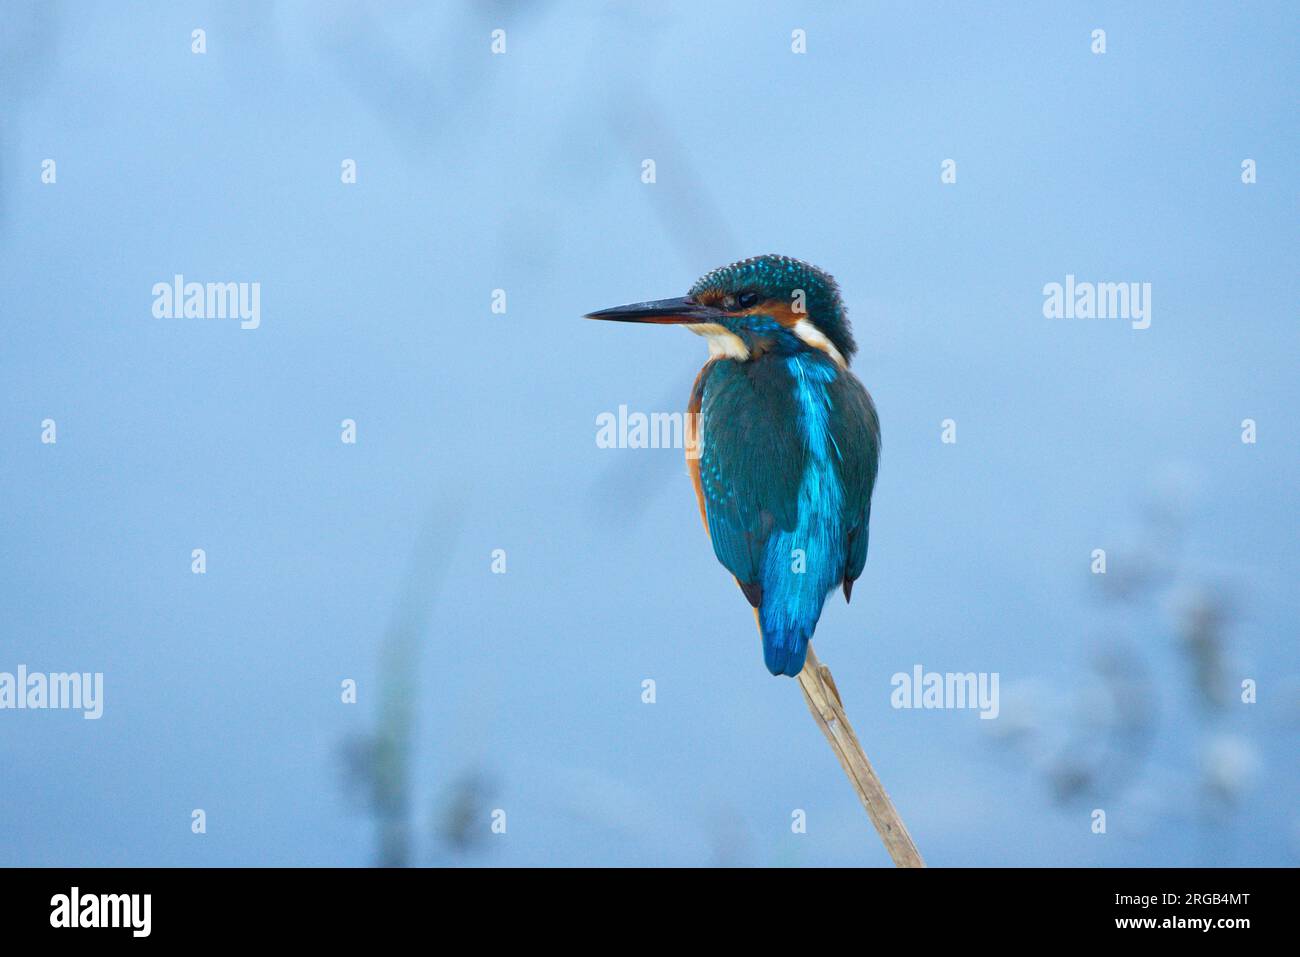 Un kingfisher arroccato su una canna .un Martín pescador posado en una caña Foto Stock